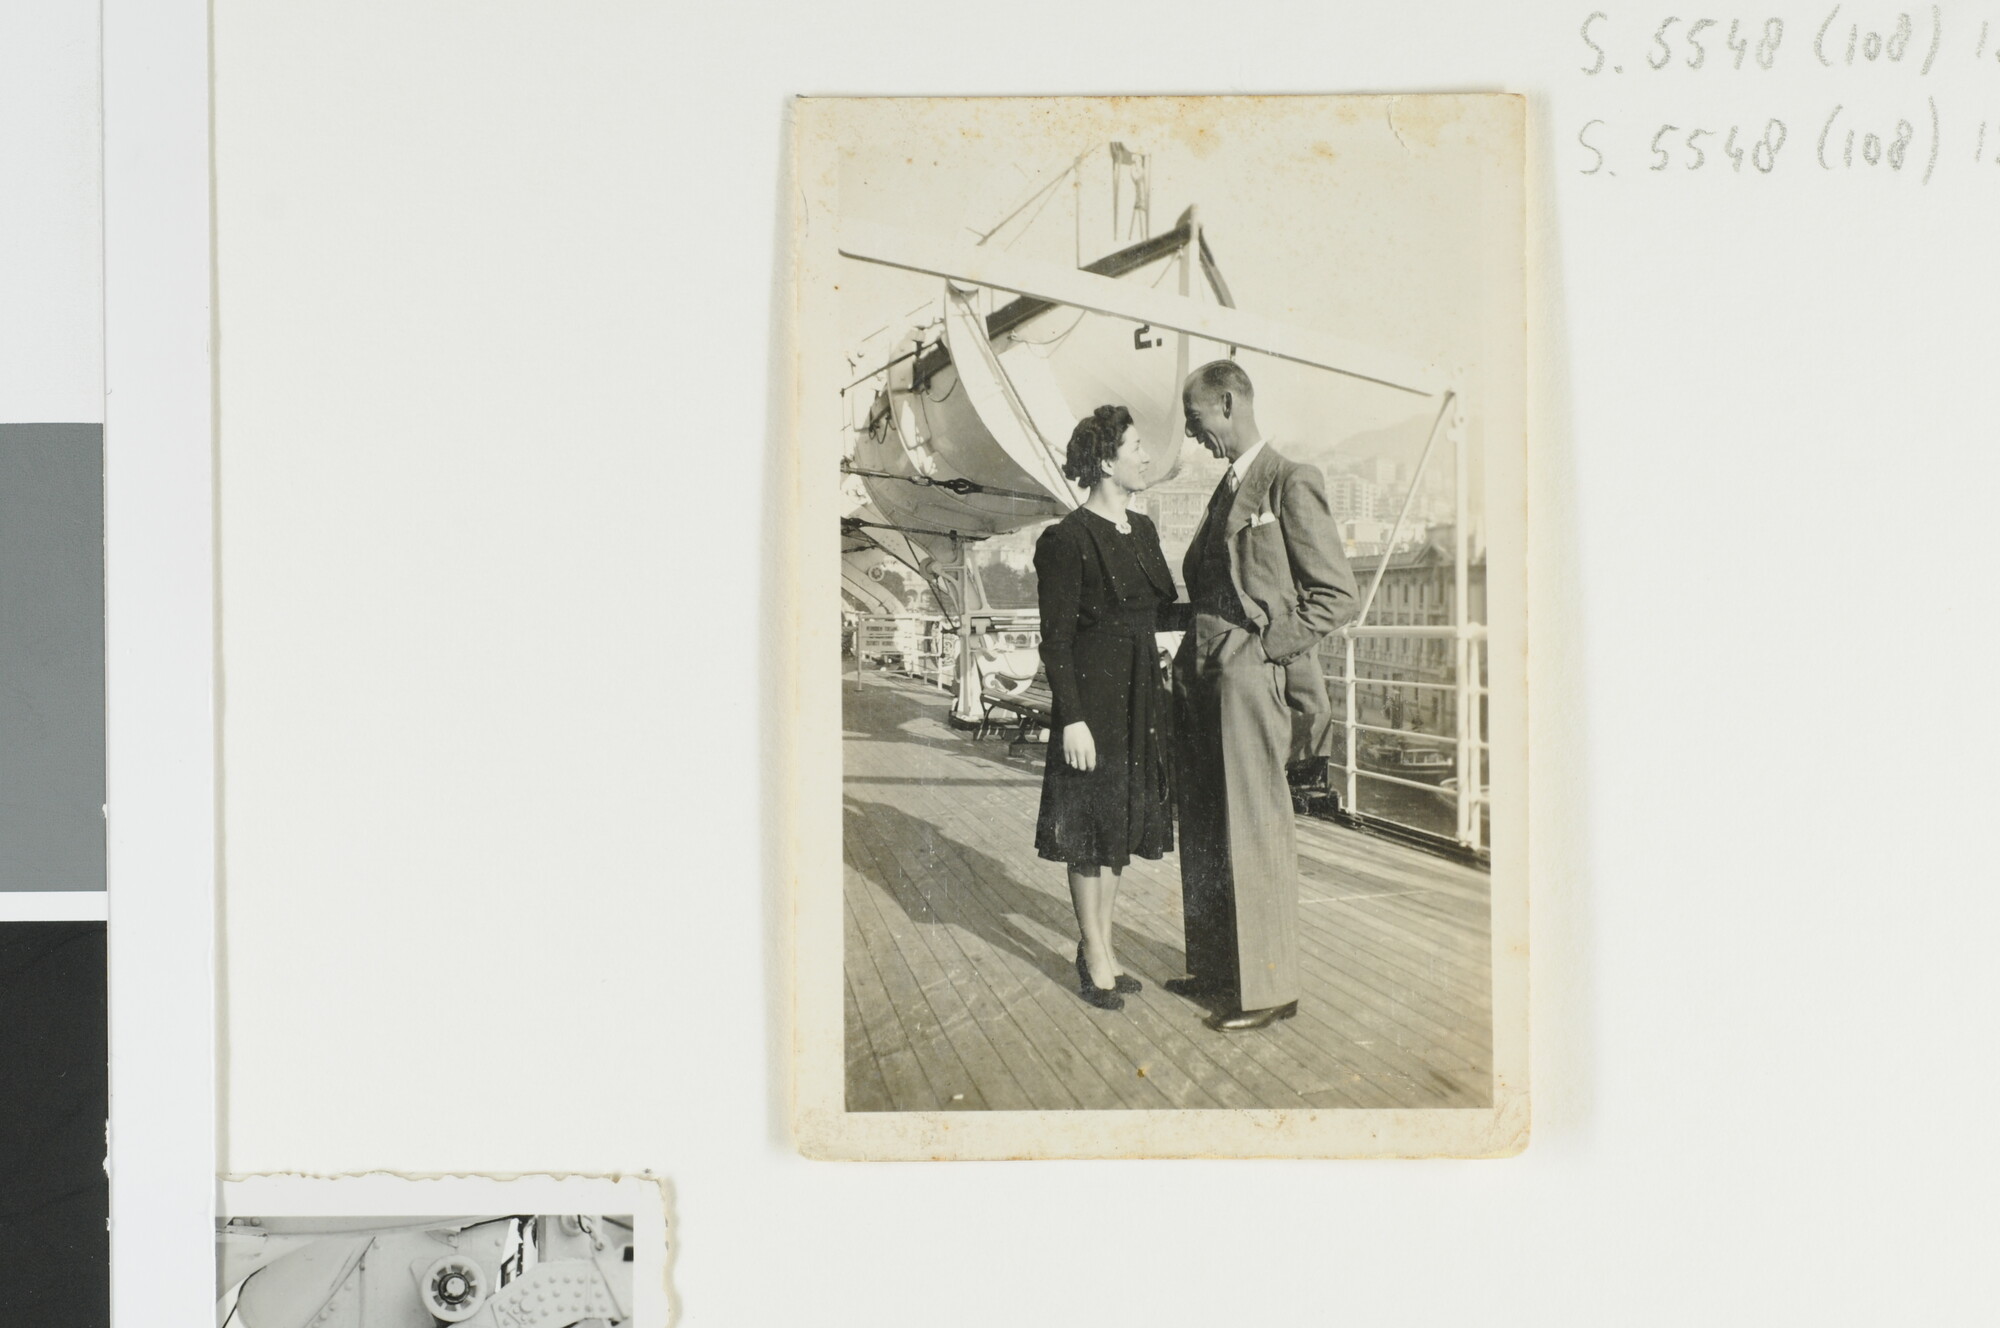 S.5548(108)13; J.D. van Schooten poseert met zijn vrouw aan dek van het mailschip ms. 'Marnix van Sint Aldegonde' van de SMN [...]; foto